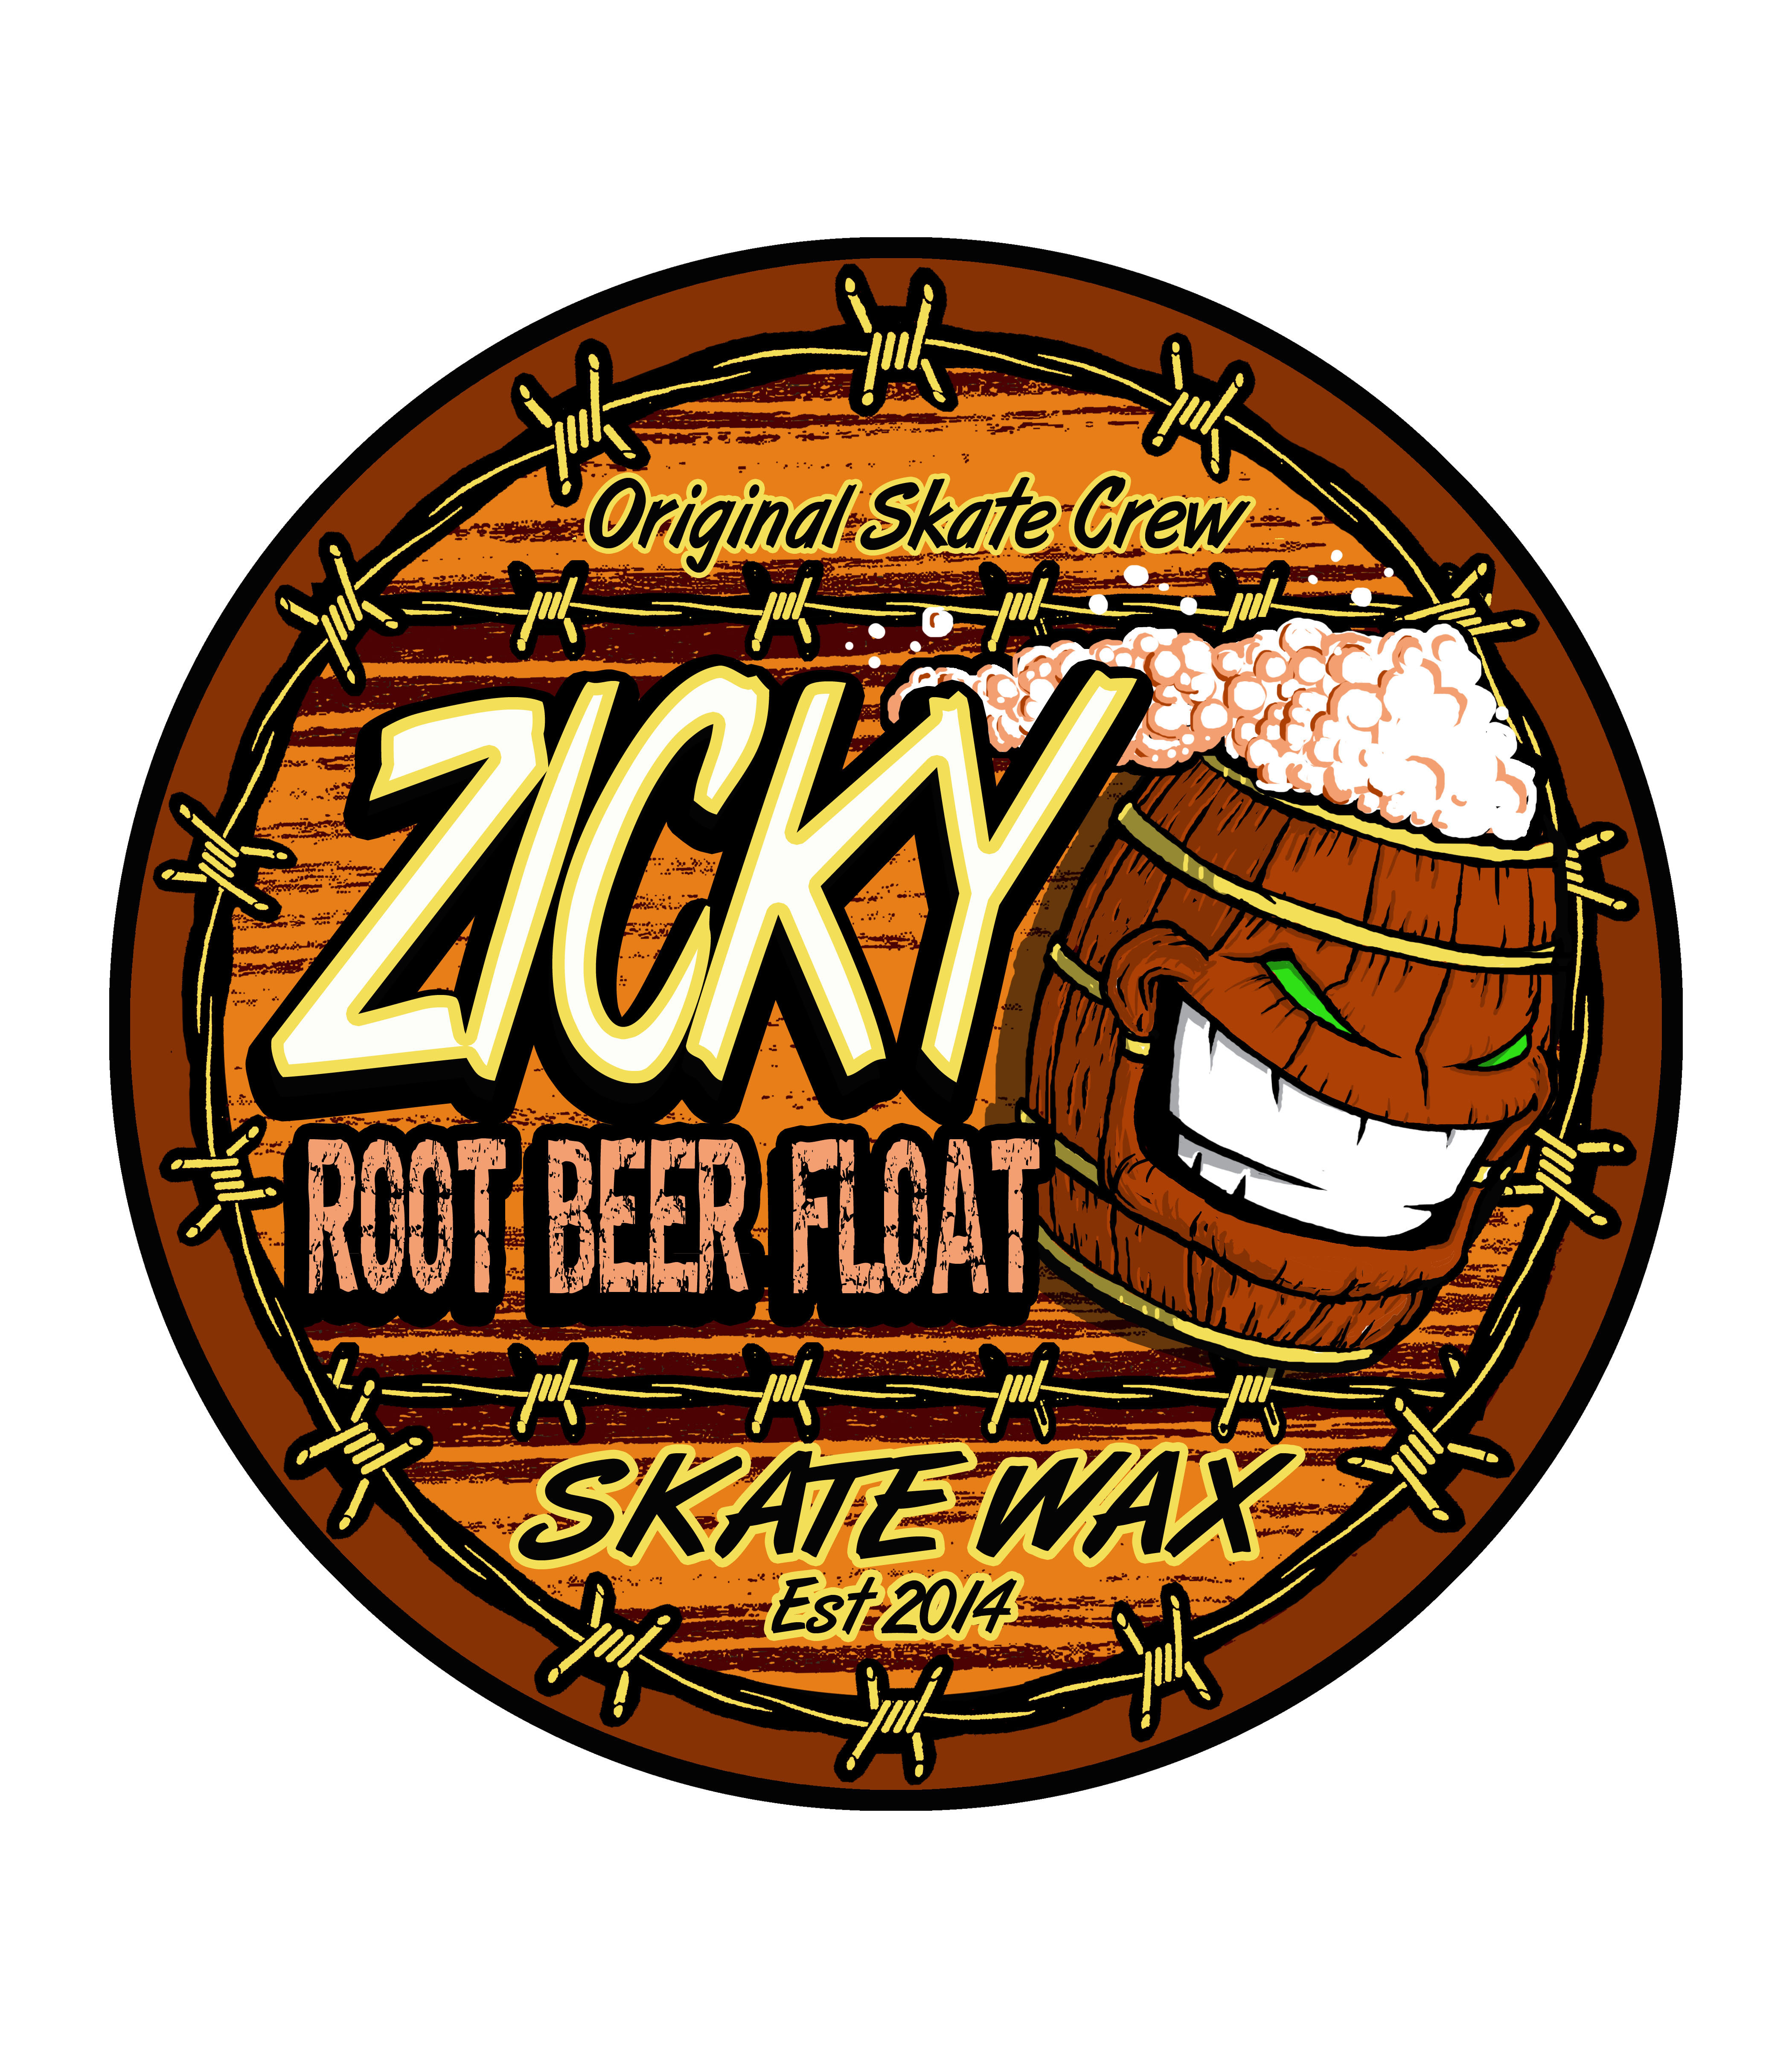 Zicky Root Beer f1